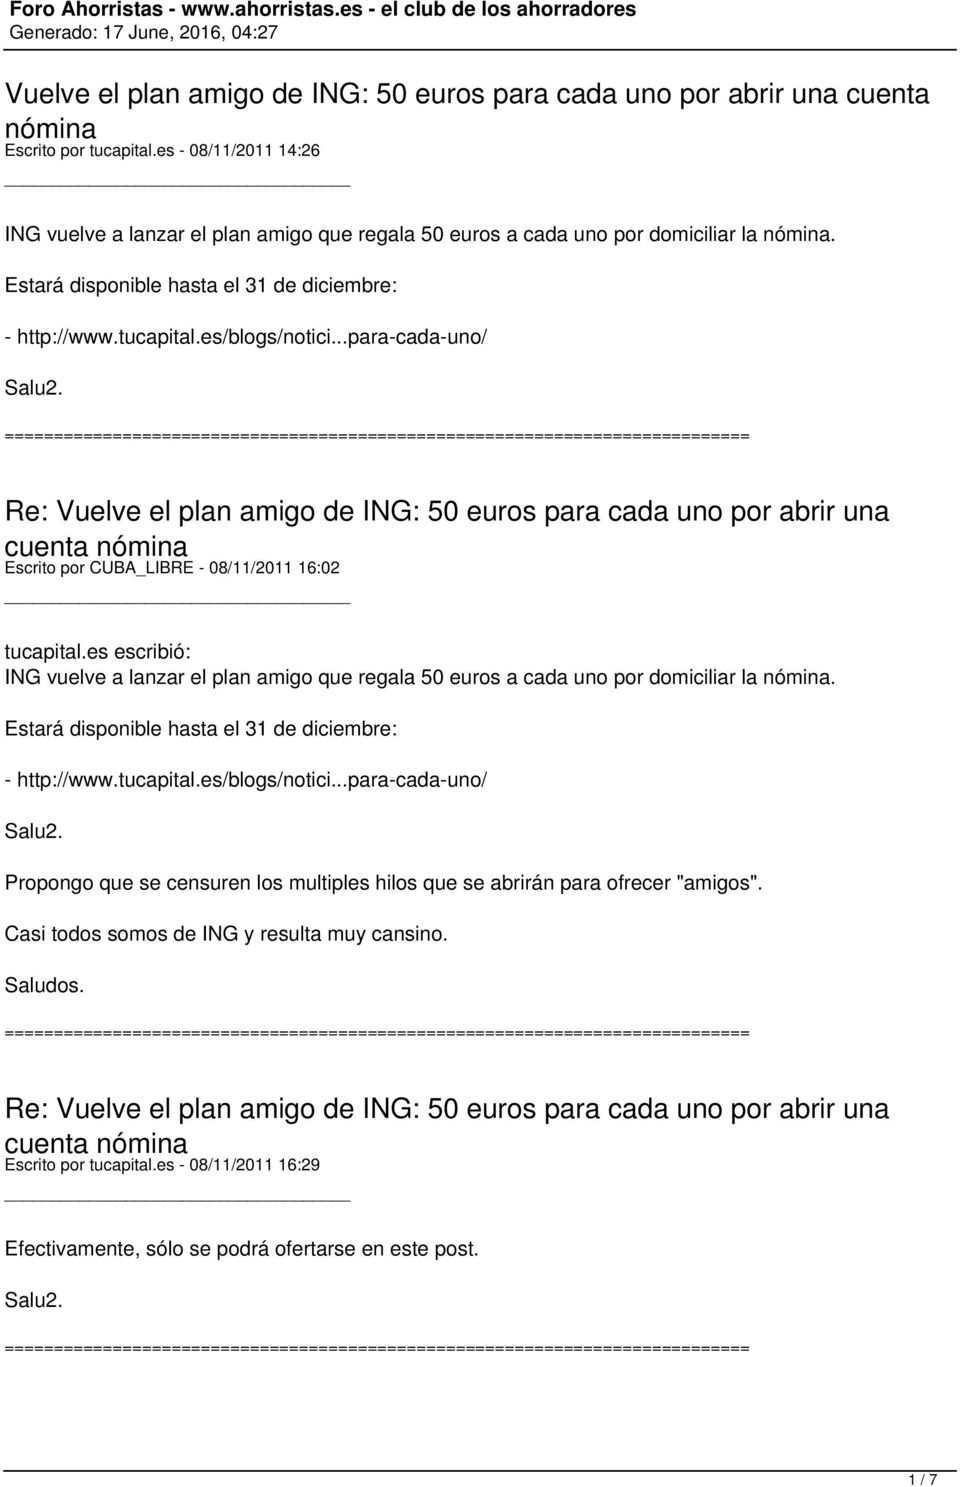 ..para-cada-uno/ Escrito por CUBA_LIBRE - 08/11/2011 16:02 tucapital.es escribió: ING vuelve a lanzar el plan amigo que regala 50 euros a cada uno por domiciliar la nómina.